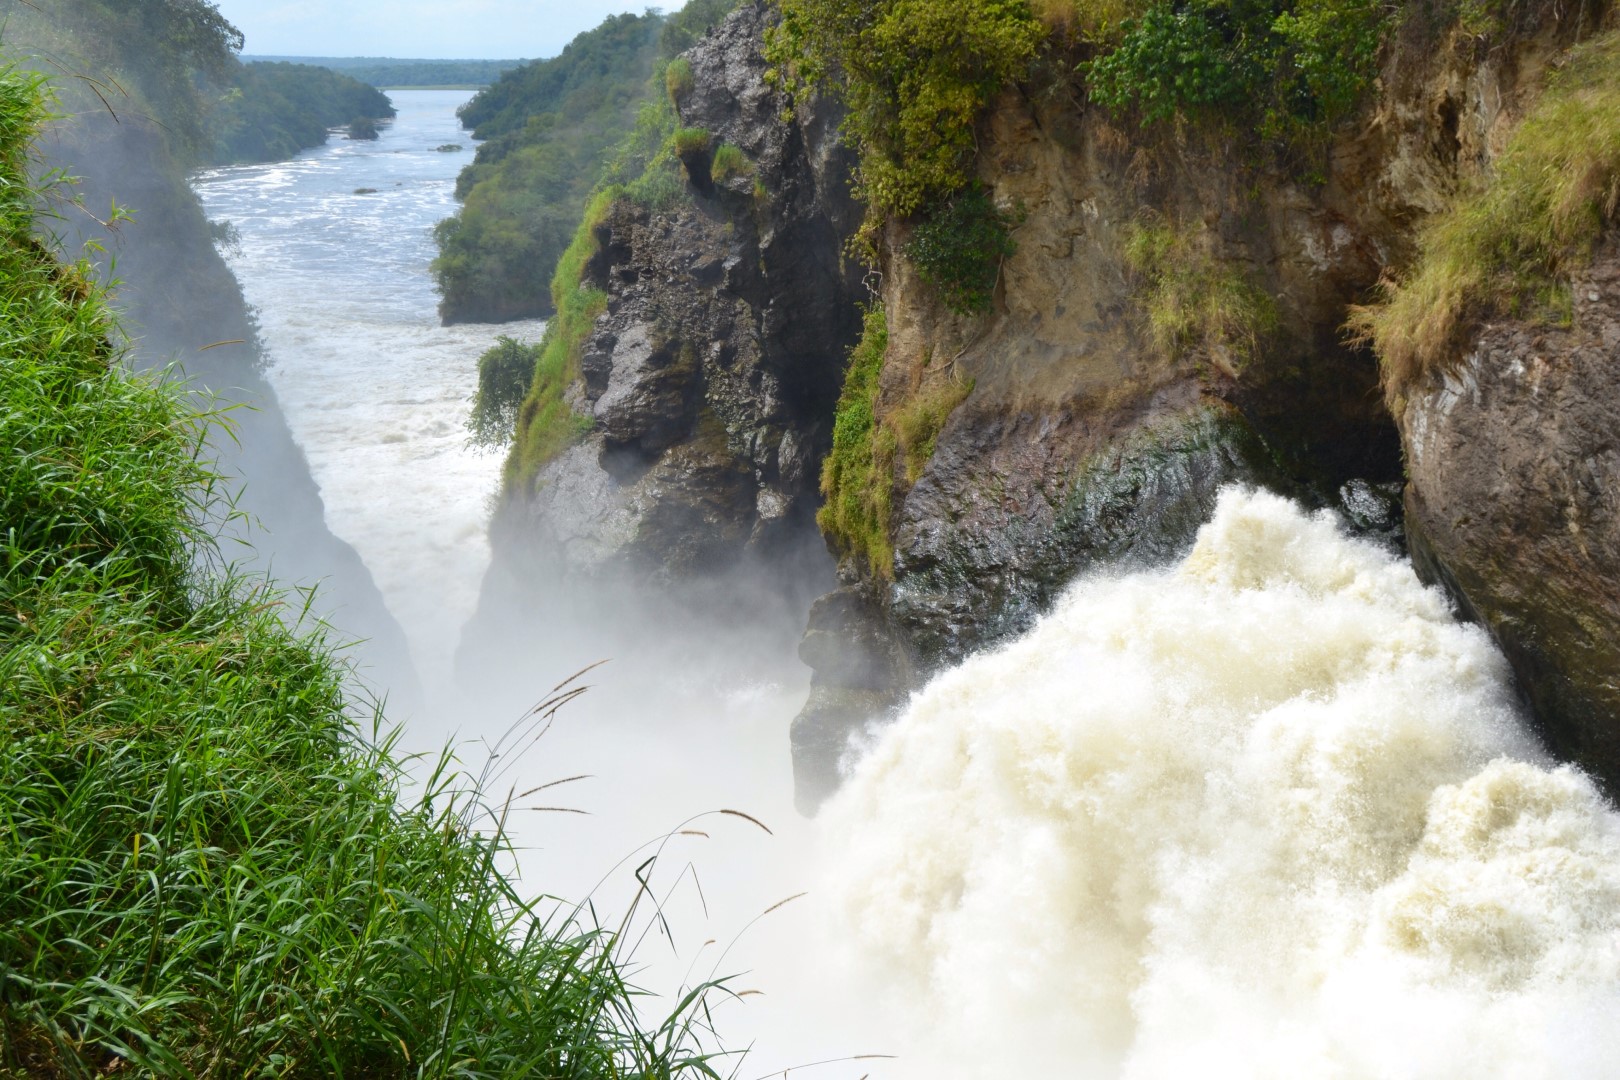 A closer of the gushing Murchison Falls, Murchison Falls National Park in Uganda